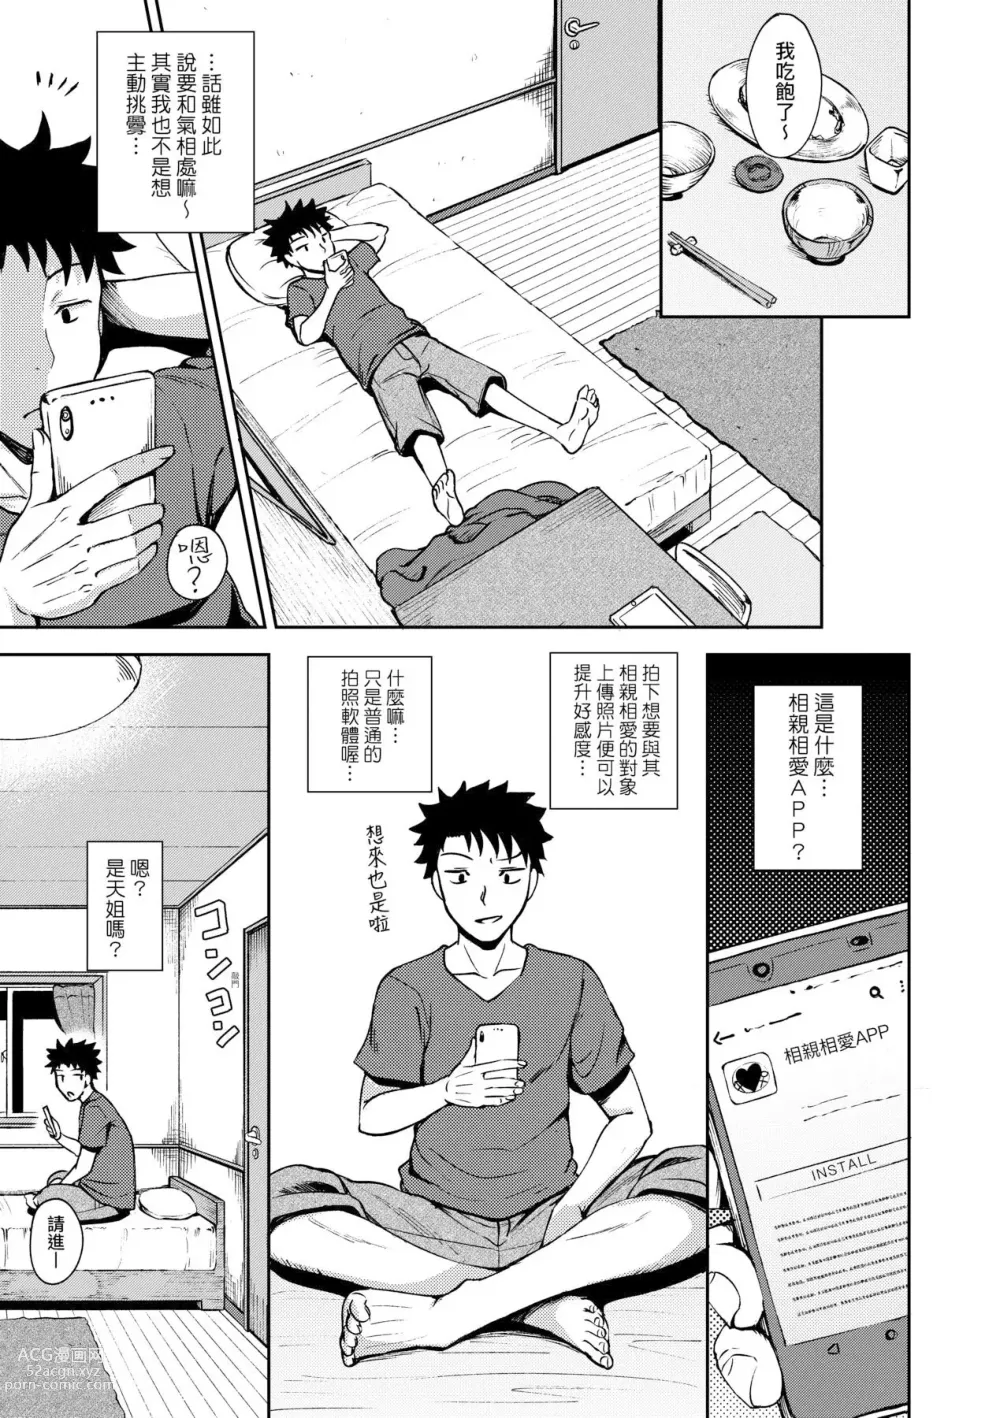 Page 9 of manga 心生遐想催眠暗示APP♡妳與我與她 (decensored)